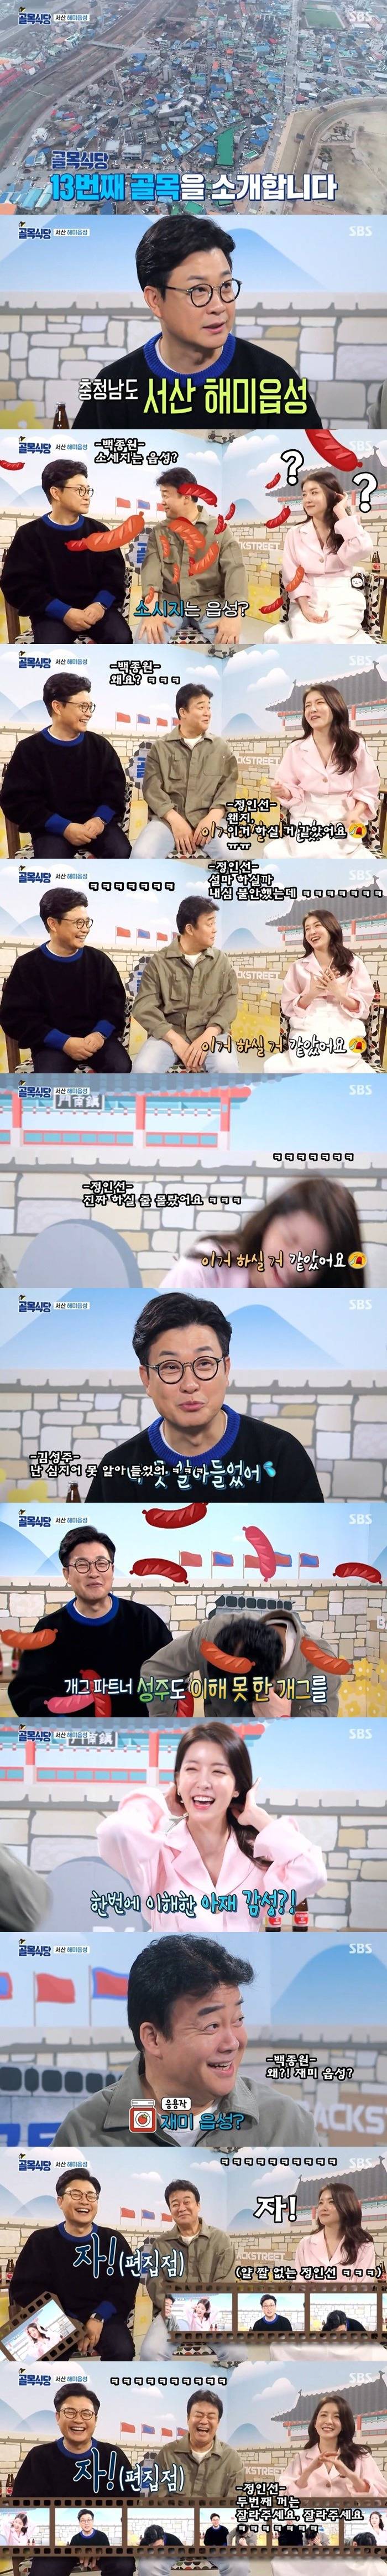 정인선 배우의 골목식당 MC 데뷔전 활약상 ㅋㅋ .JPG | 인스티즈